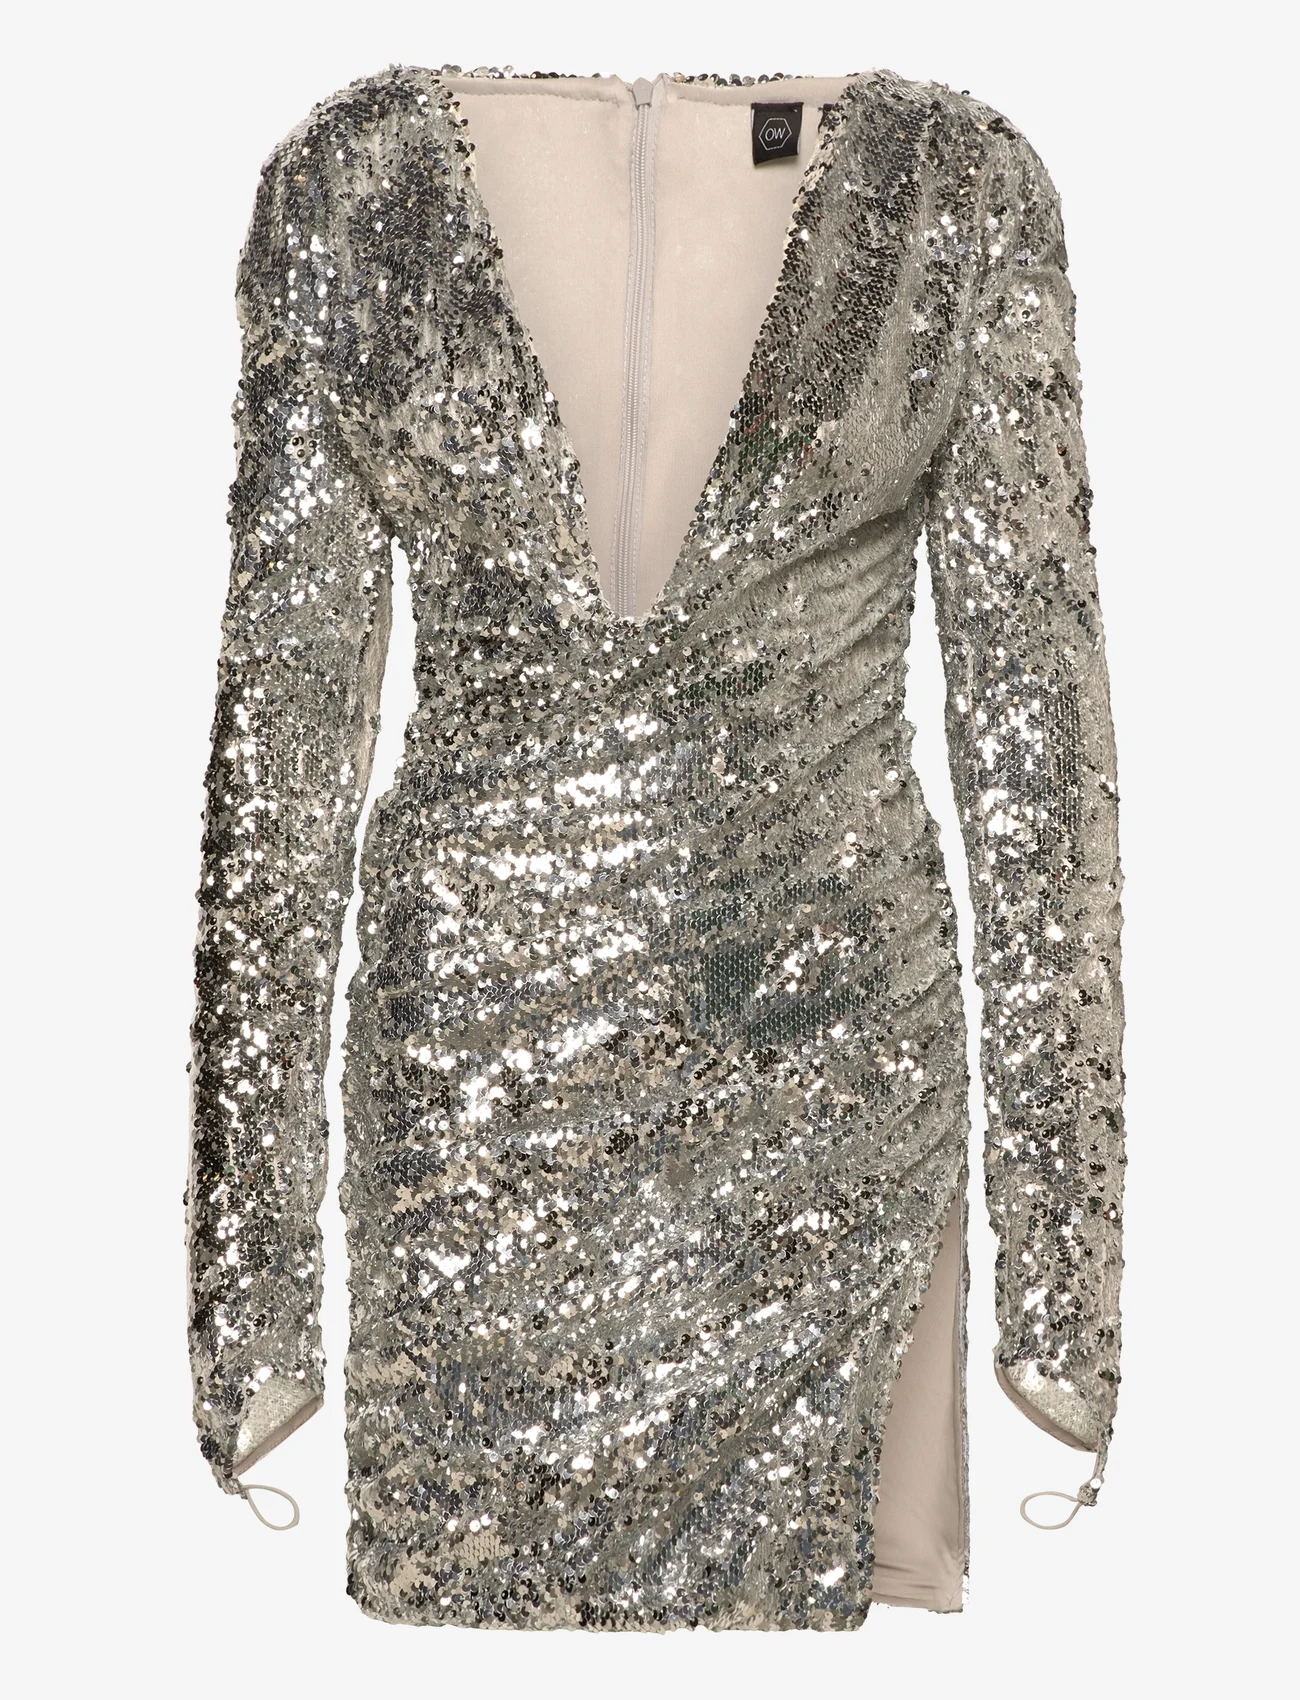 OW Collection - GLITTER Dress - odzież imprezowa w cenach outletowych - glitter - 0